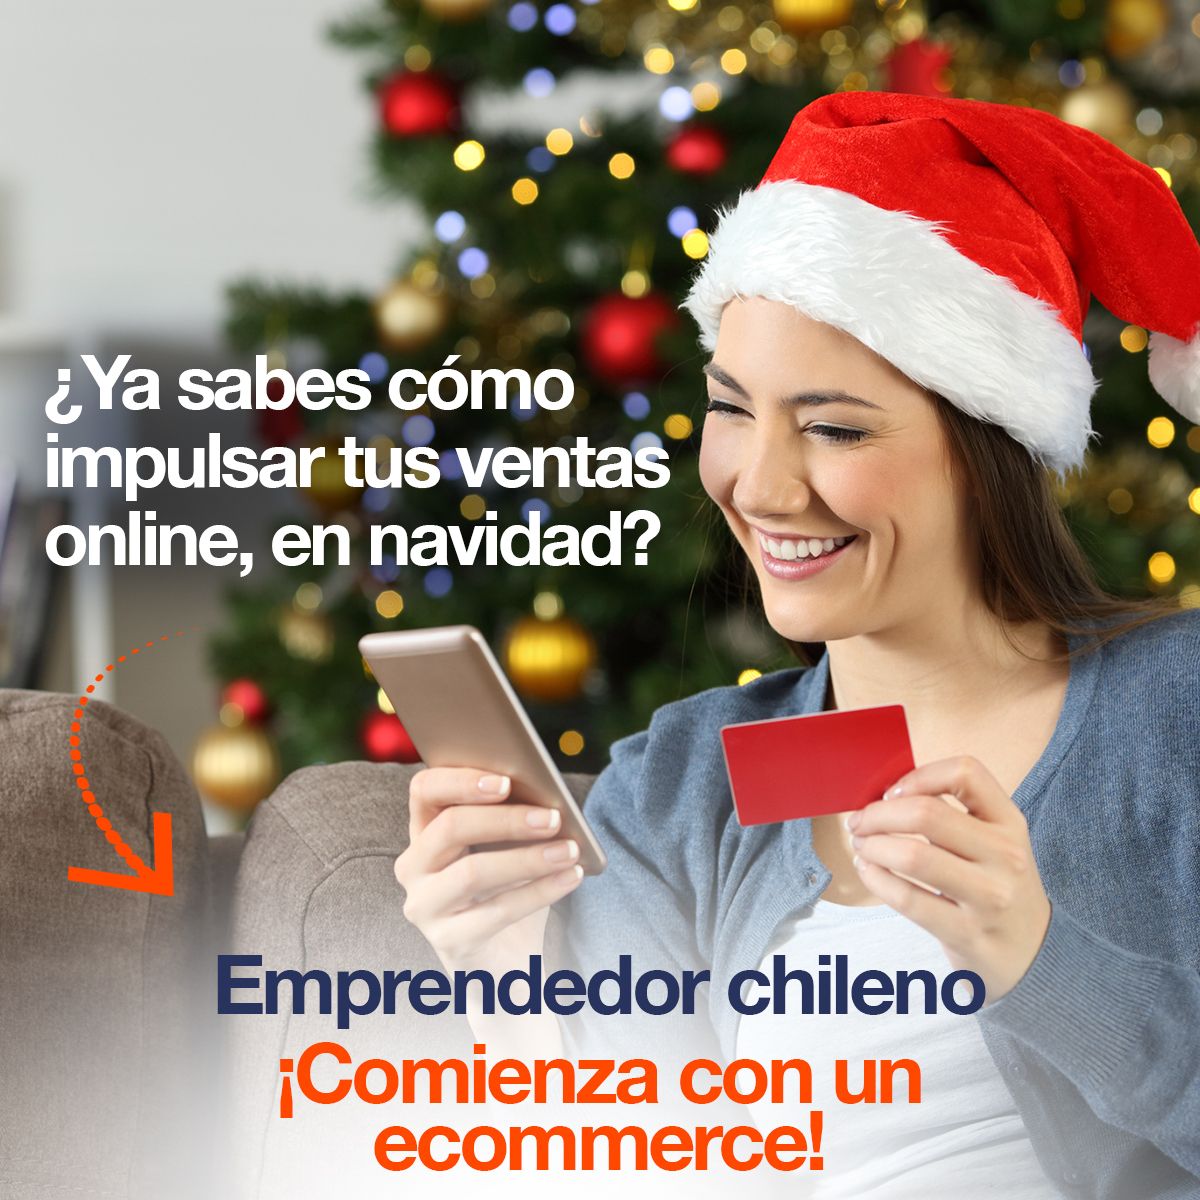 ¿Ya sabes cómo impulsar tus ventas online, en navidad? Emprendedor chileno ¡Comienza con un ecommerce!